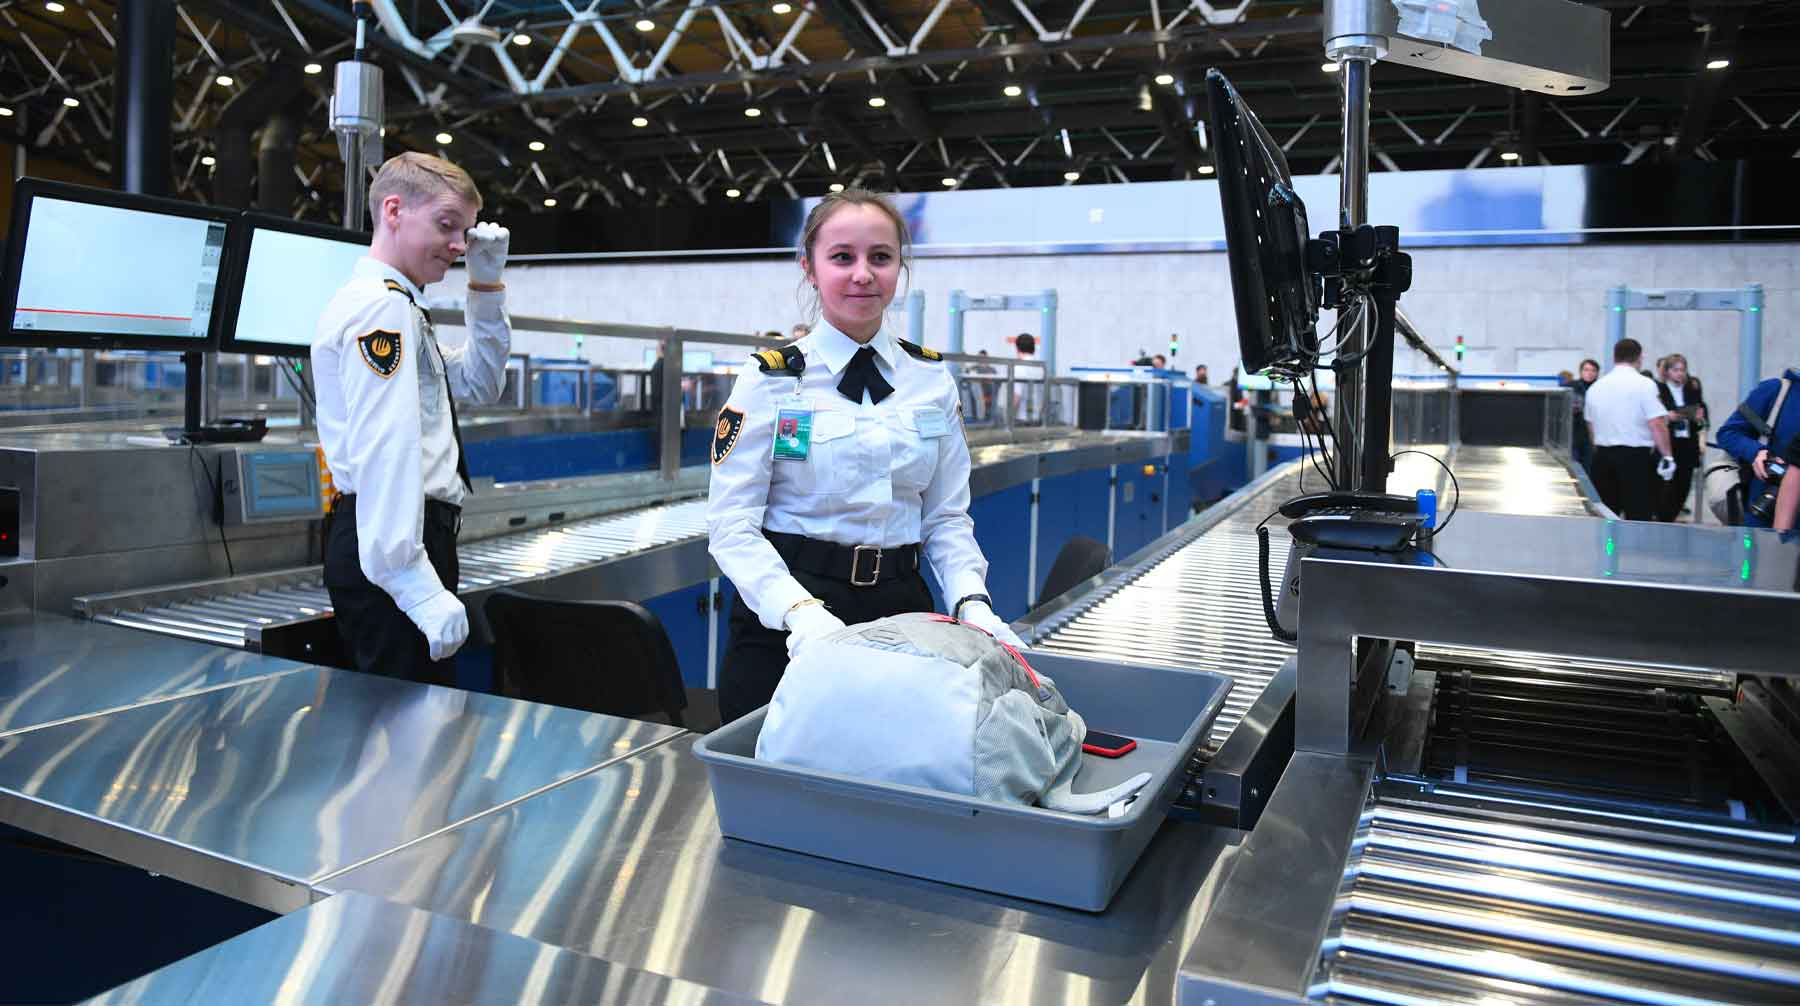 Терагерцовый сканер может определять наркотические вещества, оружие или другие запрещенные предметы в вещах пассажиров Фото: © GLOBAL LOOK press / Komsomolskaya Pravda